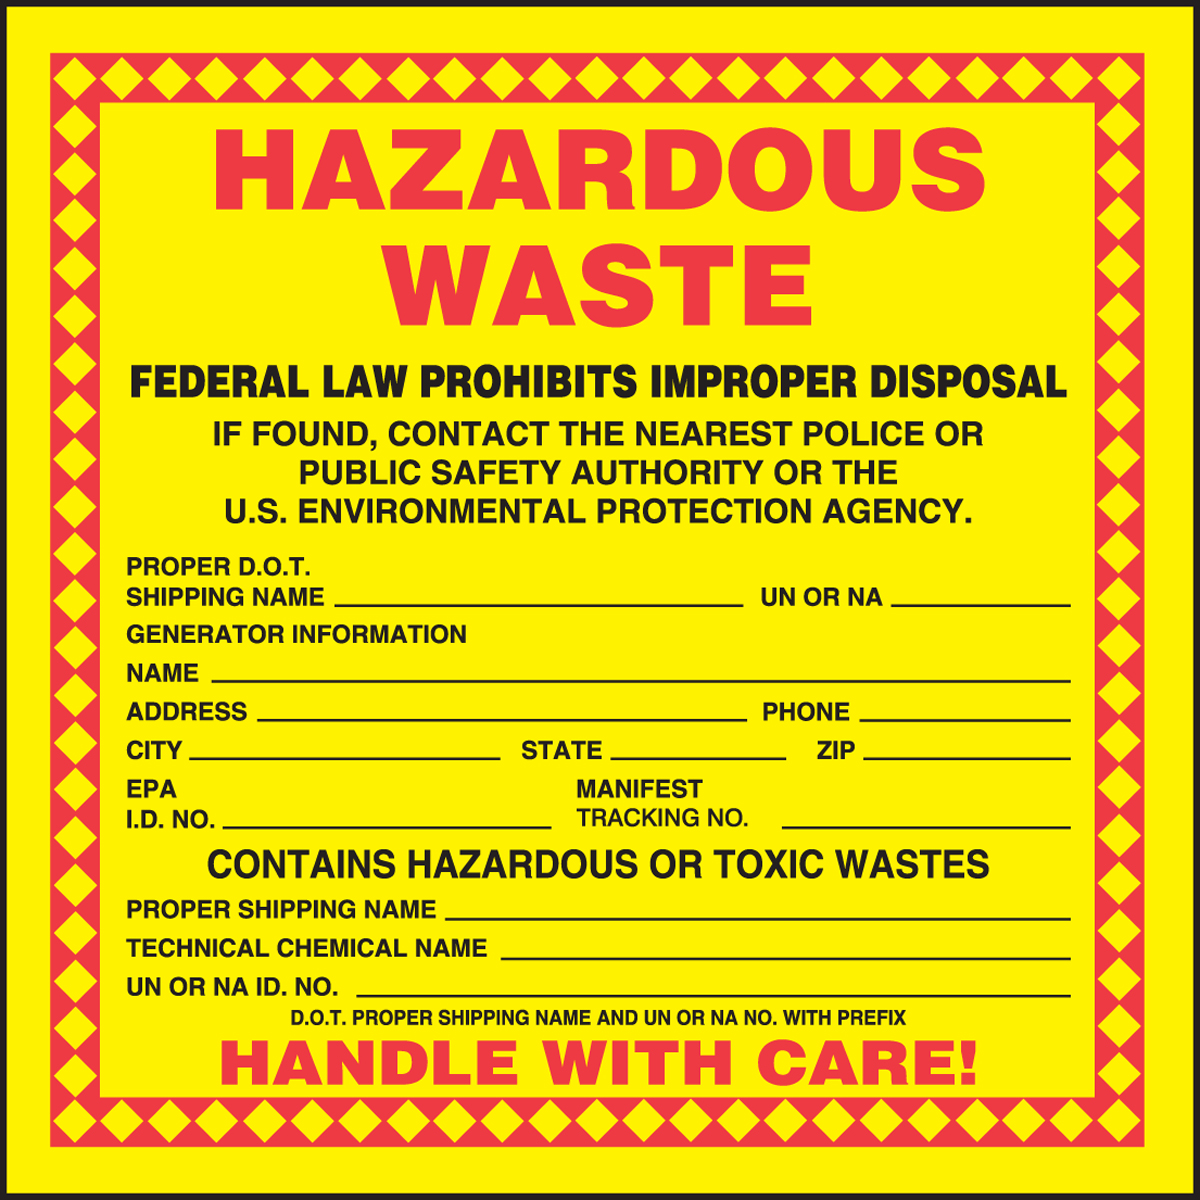 Hazardous Waste Label Hazardous Waste Technical Chemical Name